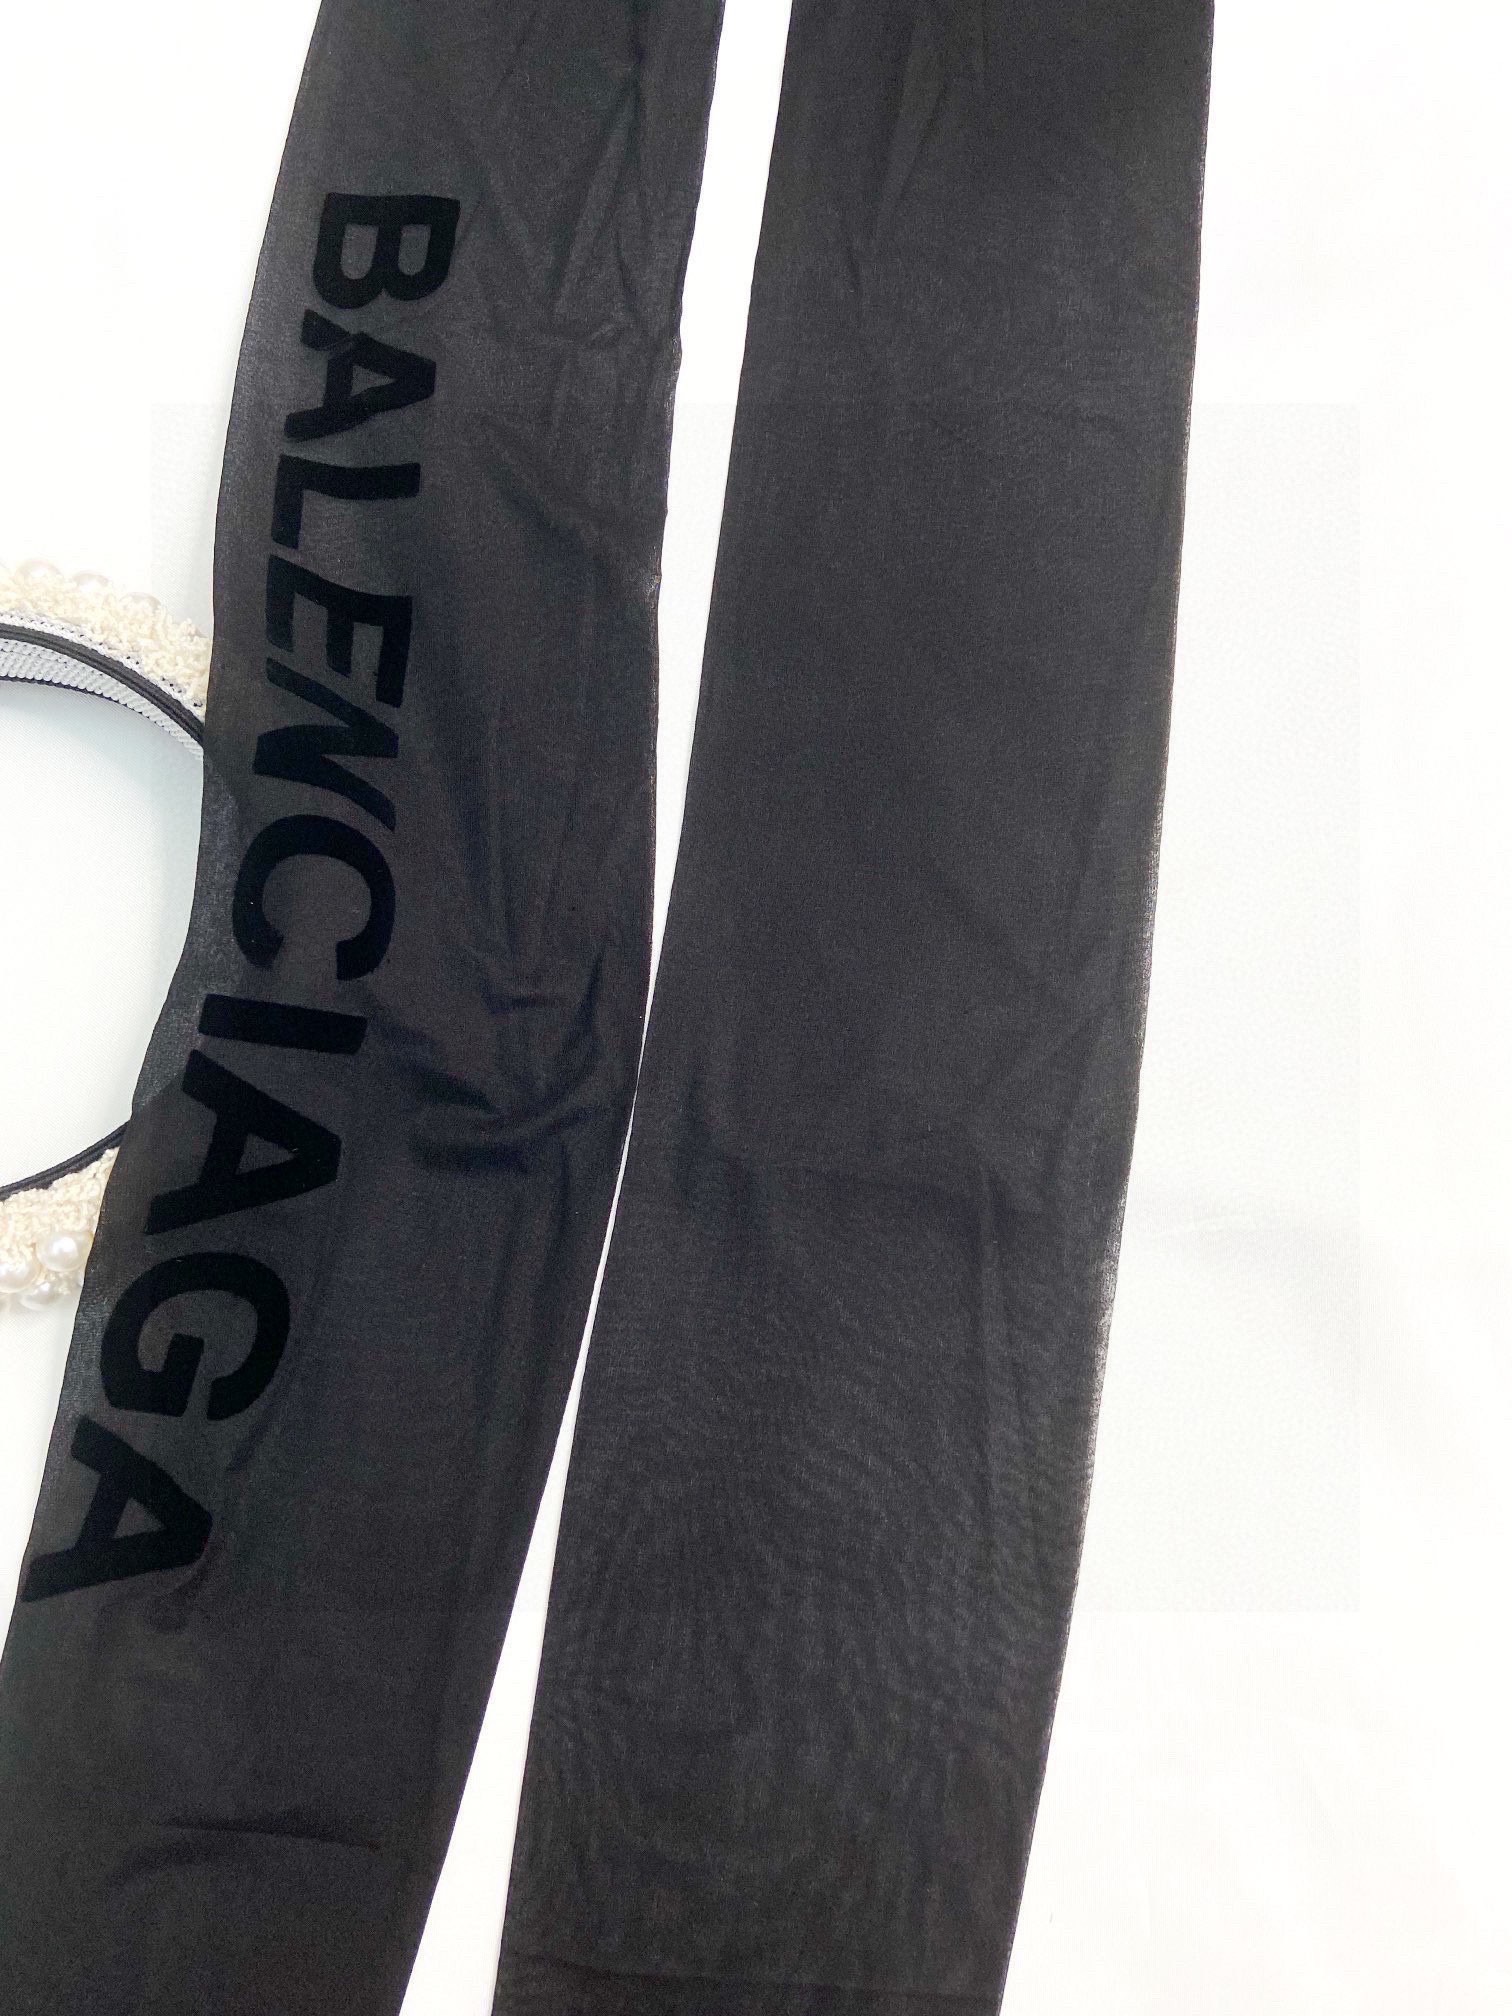 配包装一盒一双Balenciaga巴黎世家植绒字母丝袜好看到爆炸欧美大牌丝袜一比一高版本制作可以看得到的